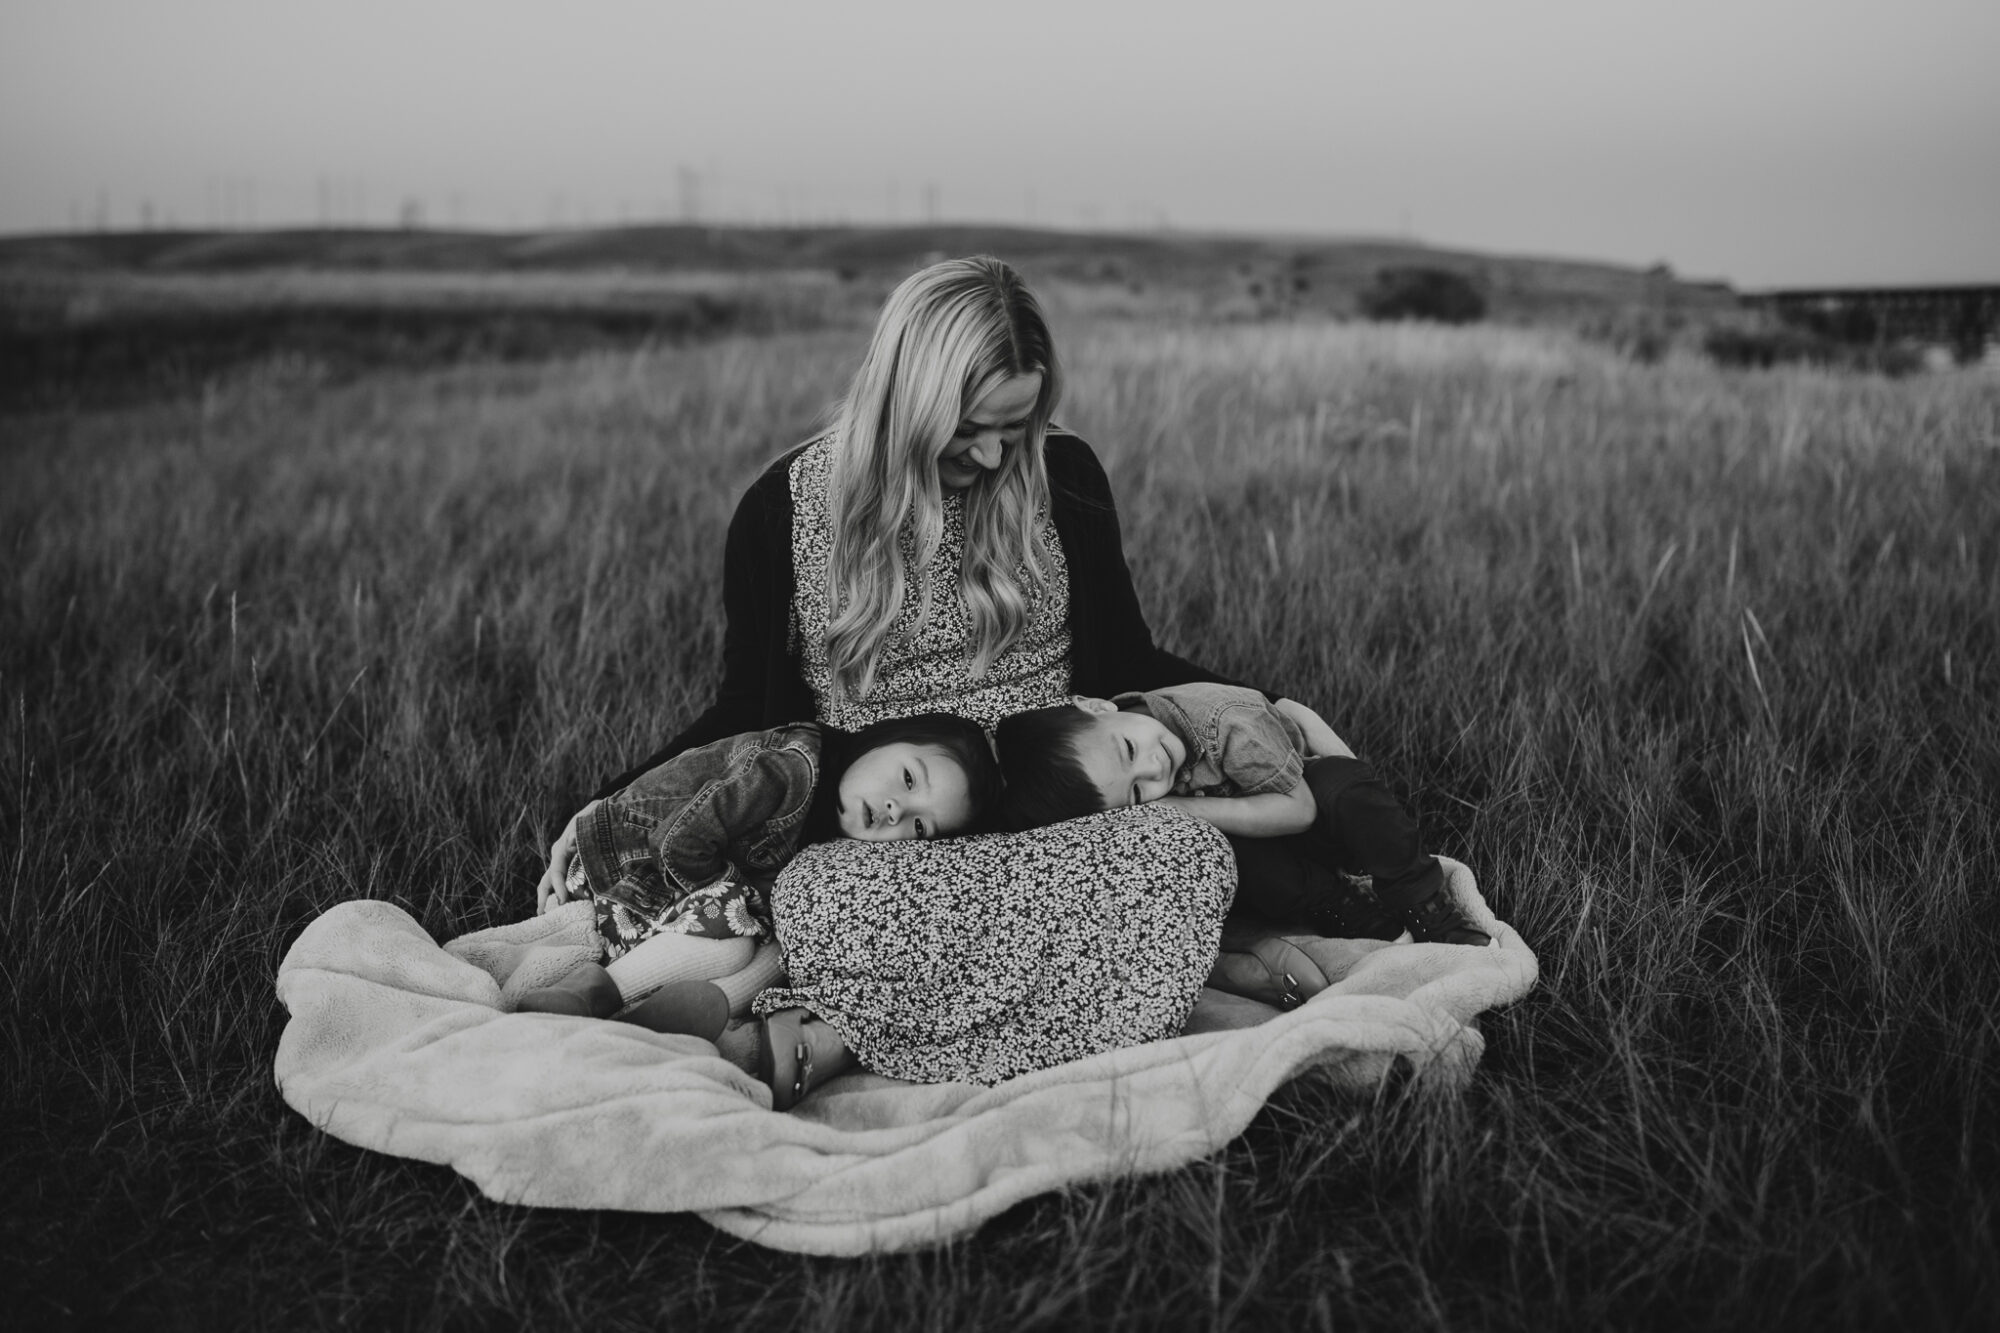 kids snuggling on moms lap in a grassy field